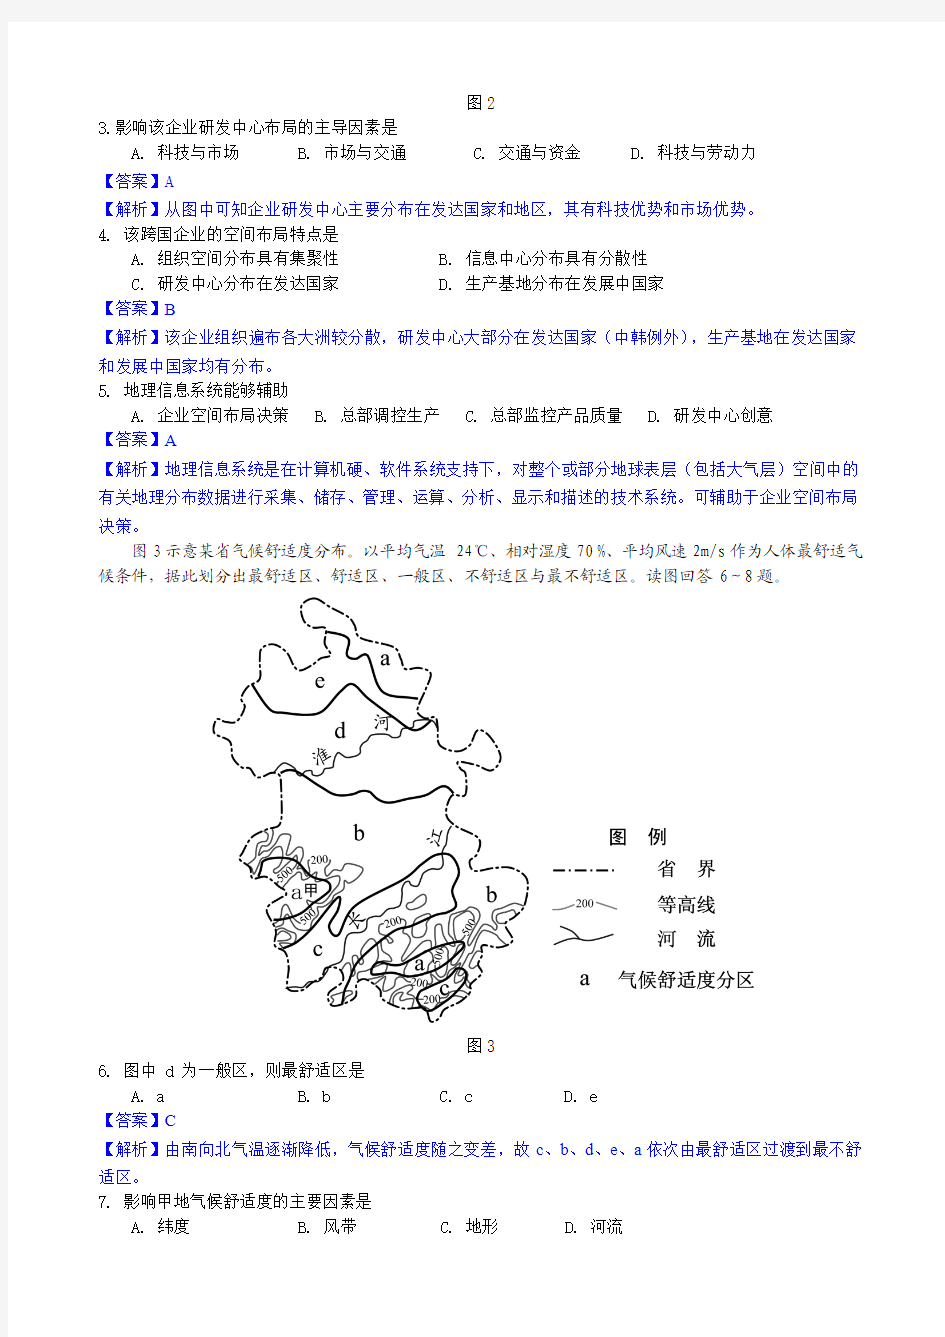 2013年高考真题——文综地理(福建卷))